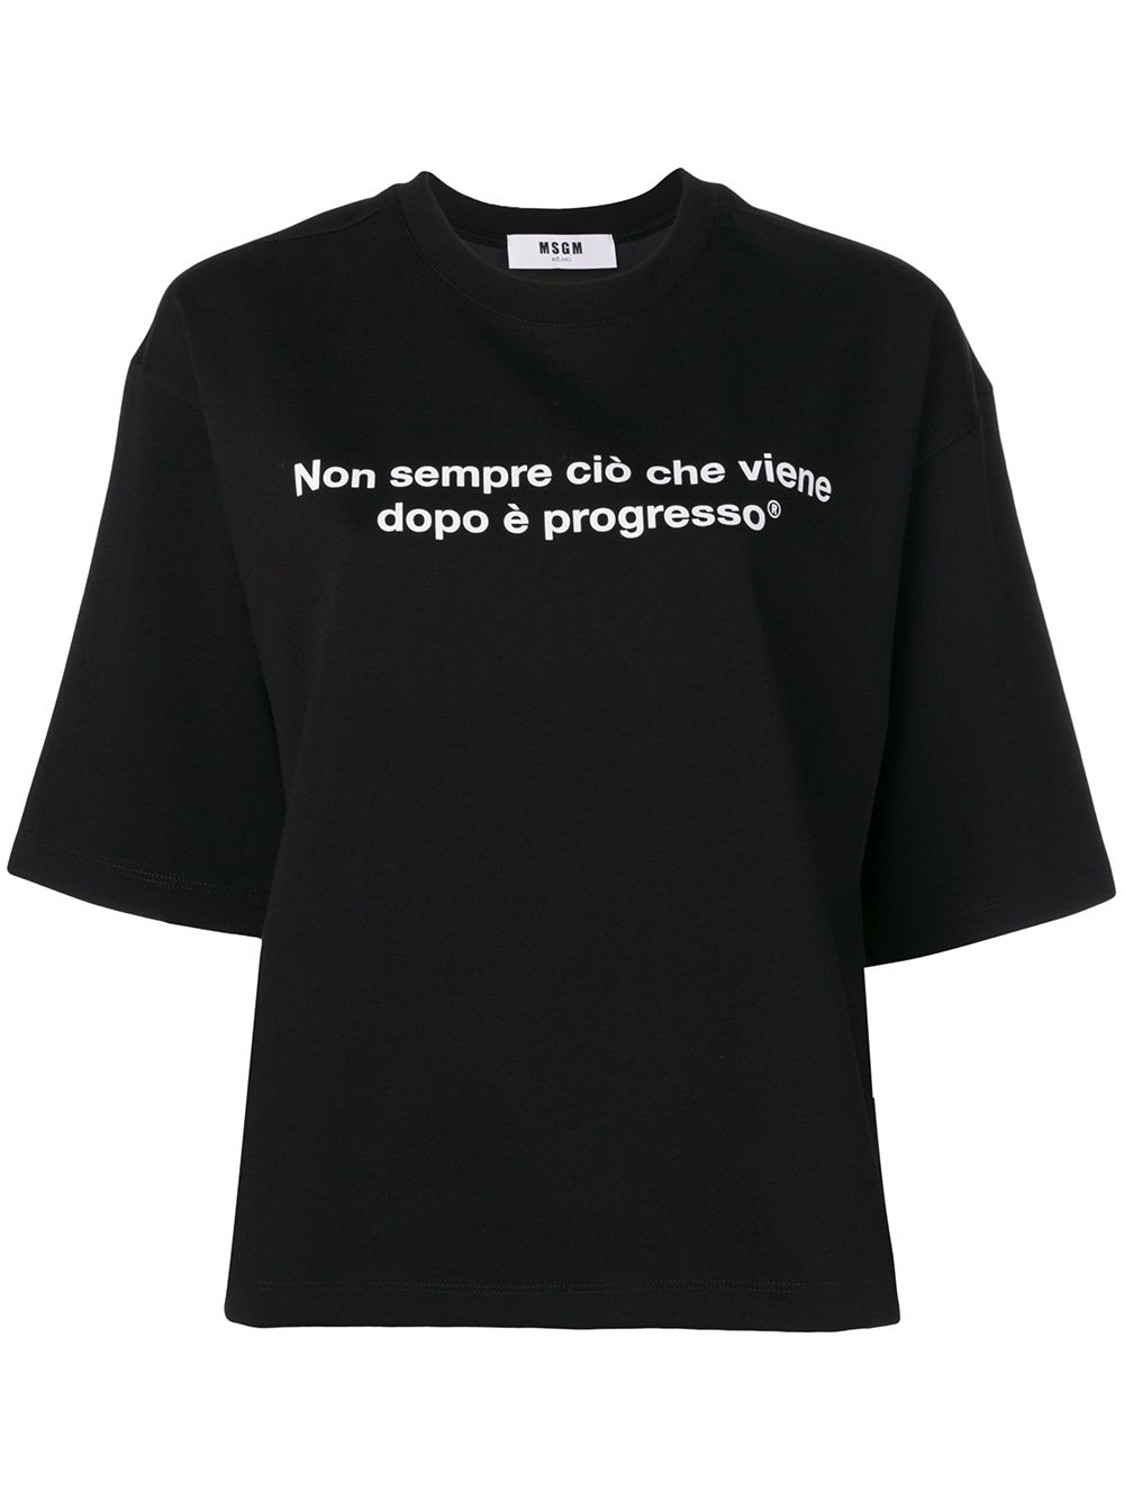 shop MSGM  T-shirts: T-shirt MSGM, nera, girocollo, manica 3/4, scritta davanti, logo dietro.

composizione: 100% cotone. number 1320